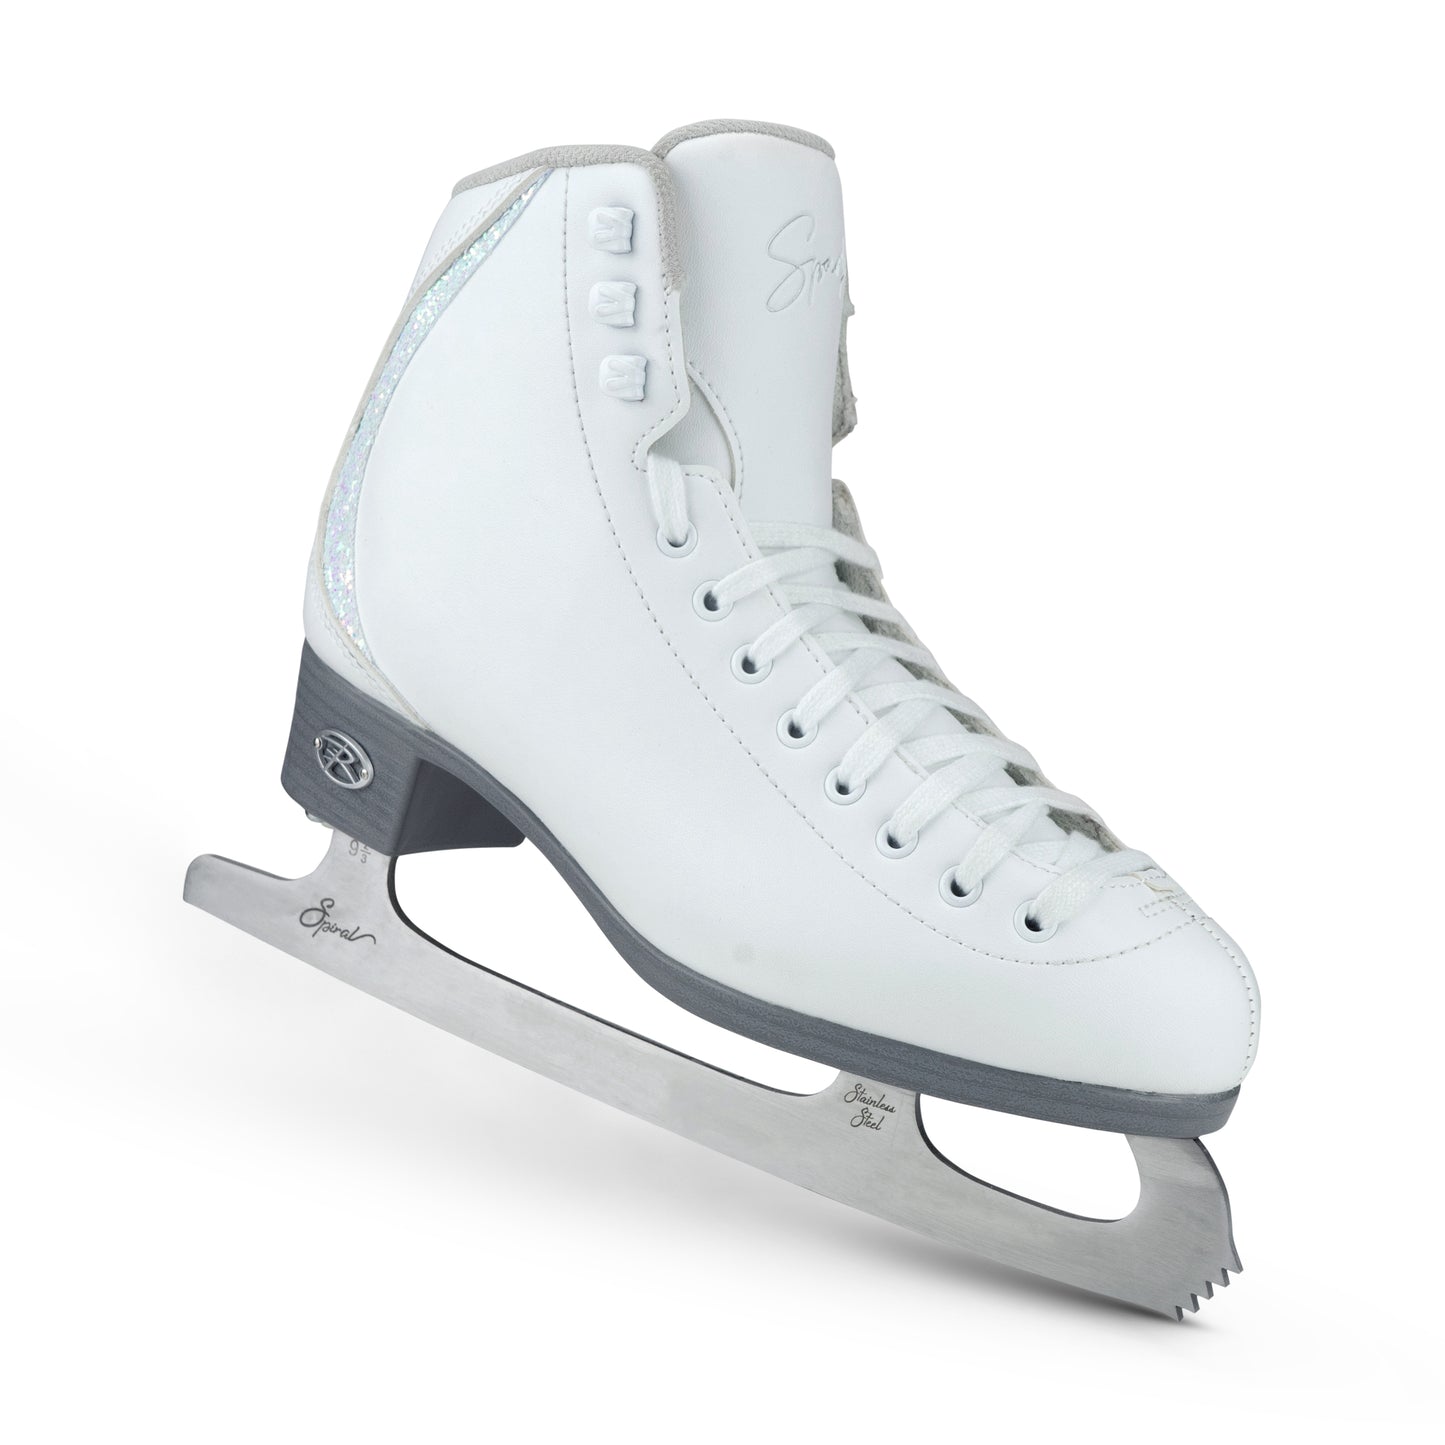 New for 2023! Riedell Sparkle Beginner Figure Skate Set